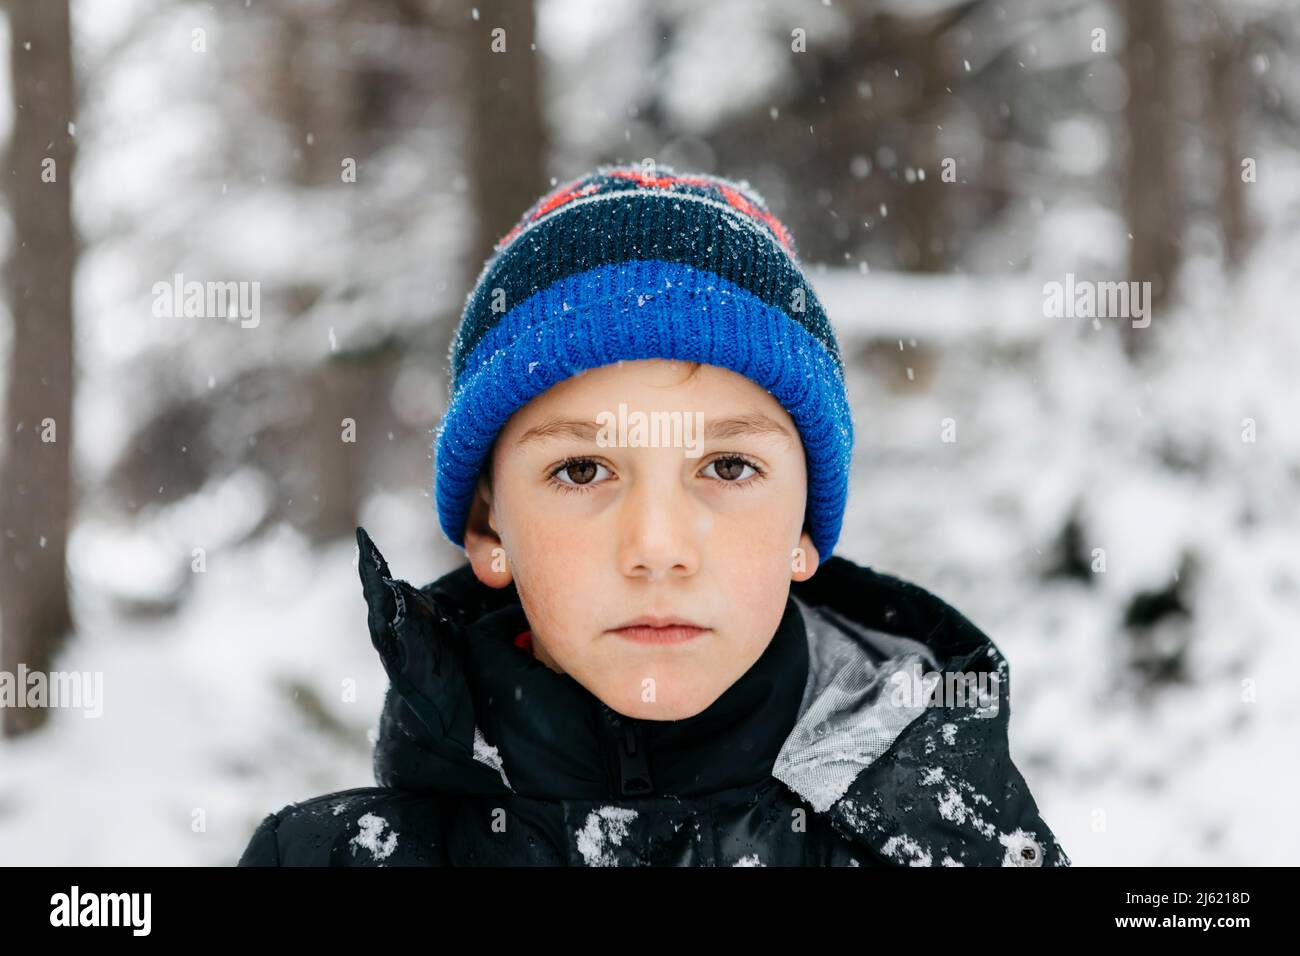 Boy wearing knit hat in winter Stock Photo